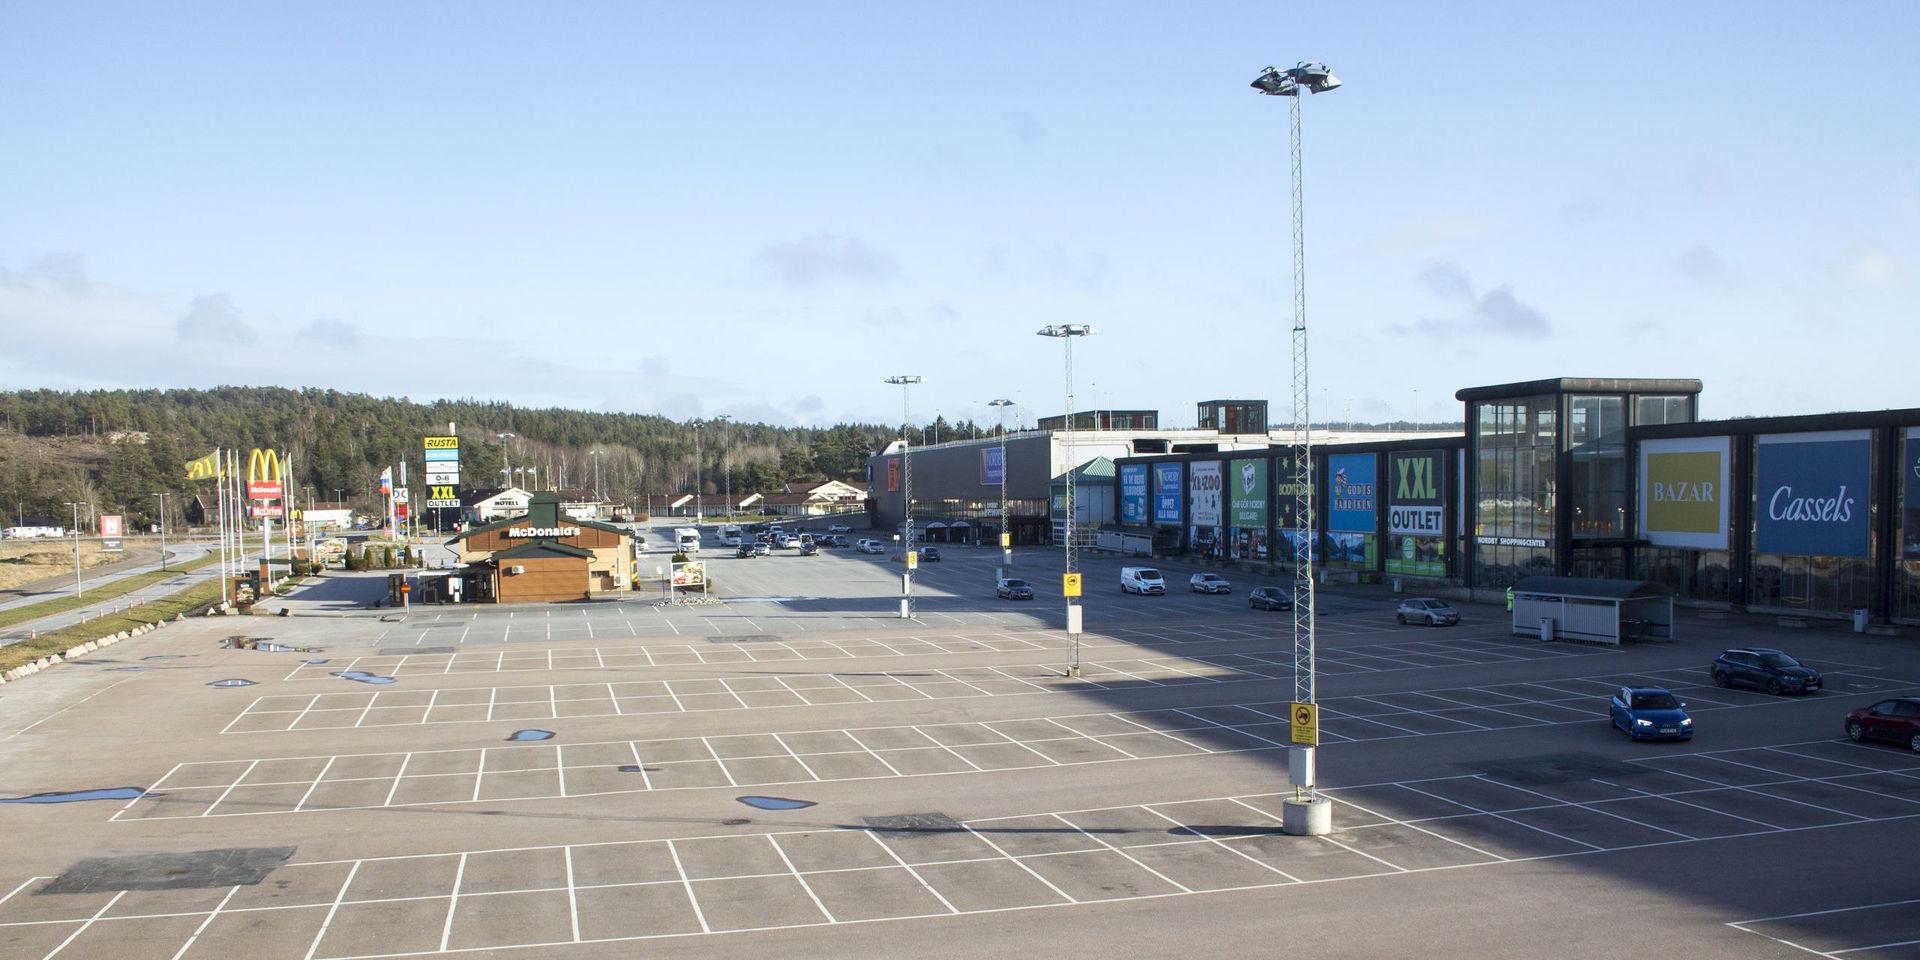 Nordby shoppingcenters parkering efter att gränsen stängdes (arkivbild).